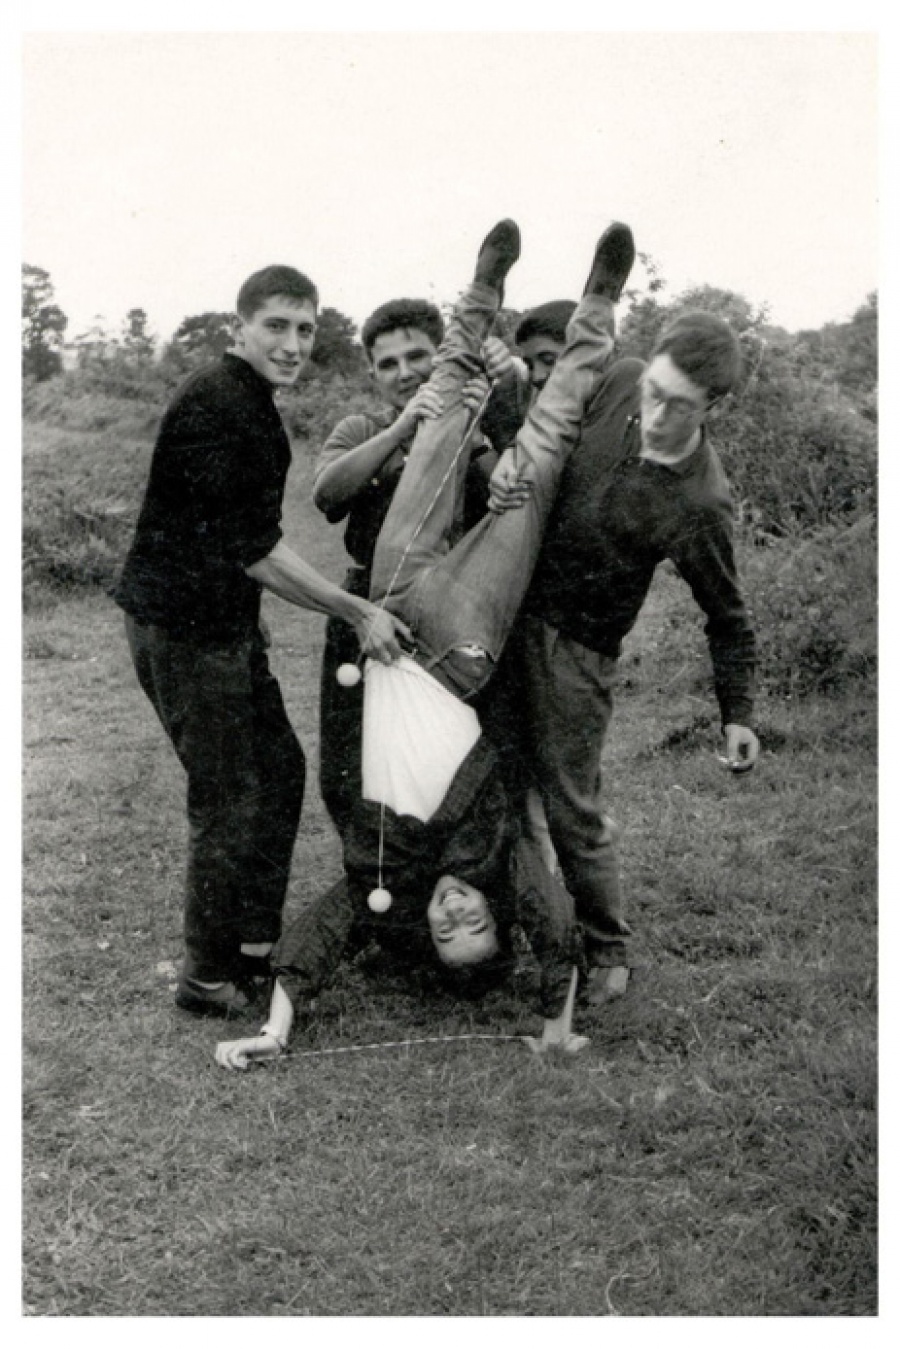 1965 - Haciendo el pino con ayuda